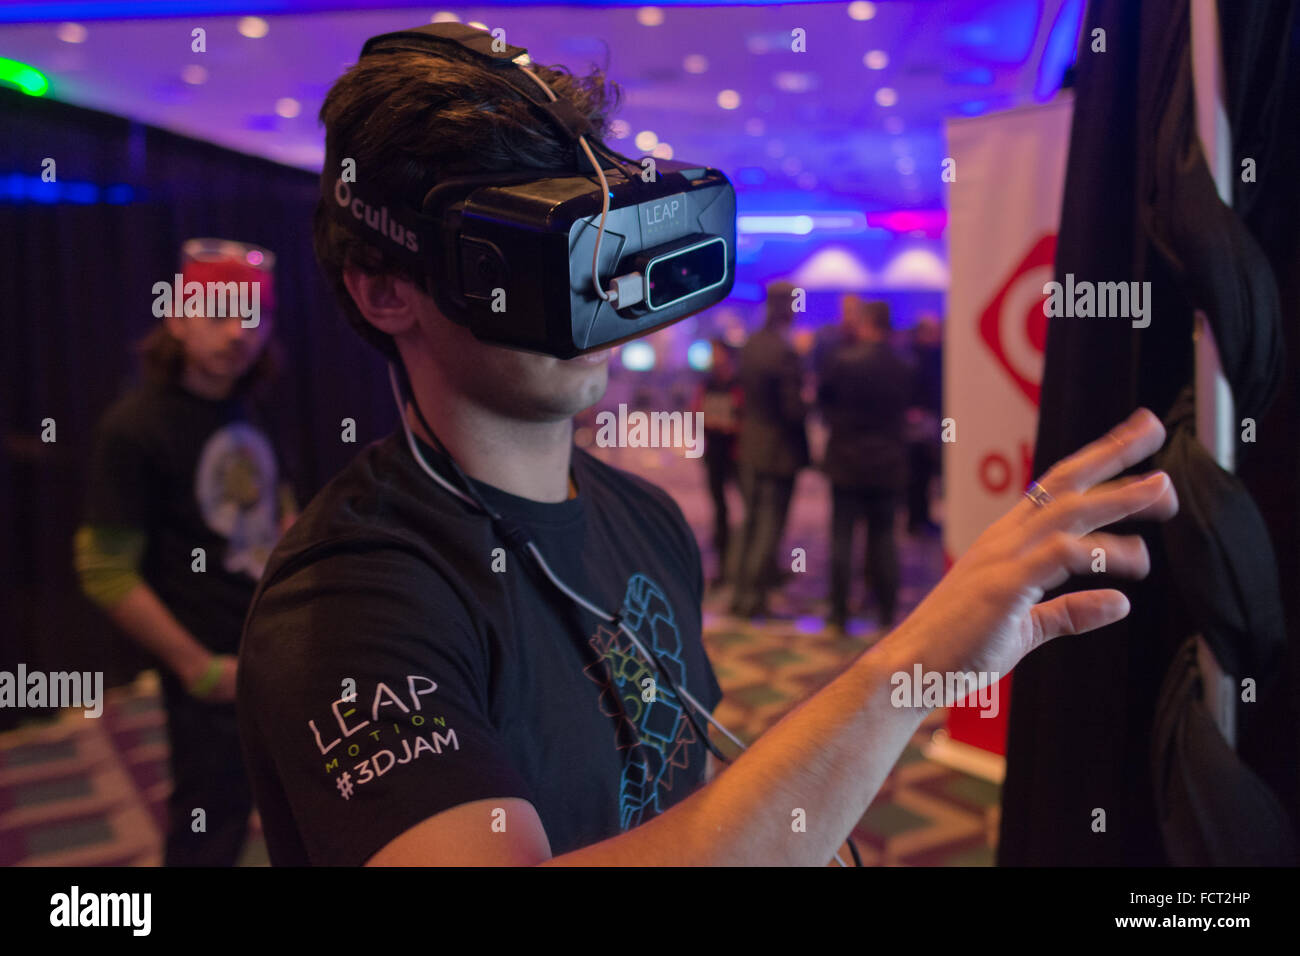 Los Angeles, Stati Uniti d'America - 23 Gennaio 2016: l'uomo cerca la realtà virtuale Oculus Rift cuffia durante Expo VRLA Inverno, realtà virtuale exp Foto Stock